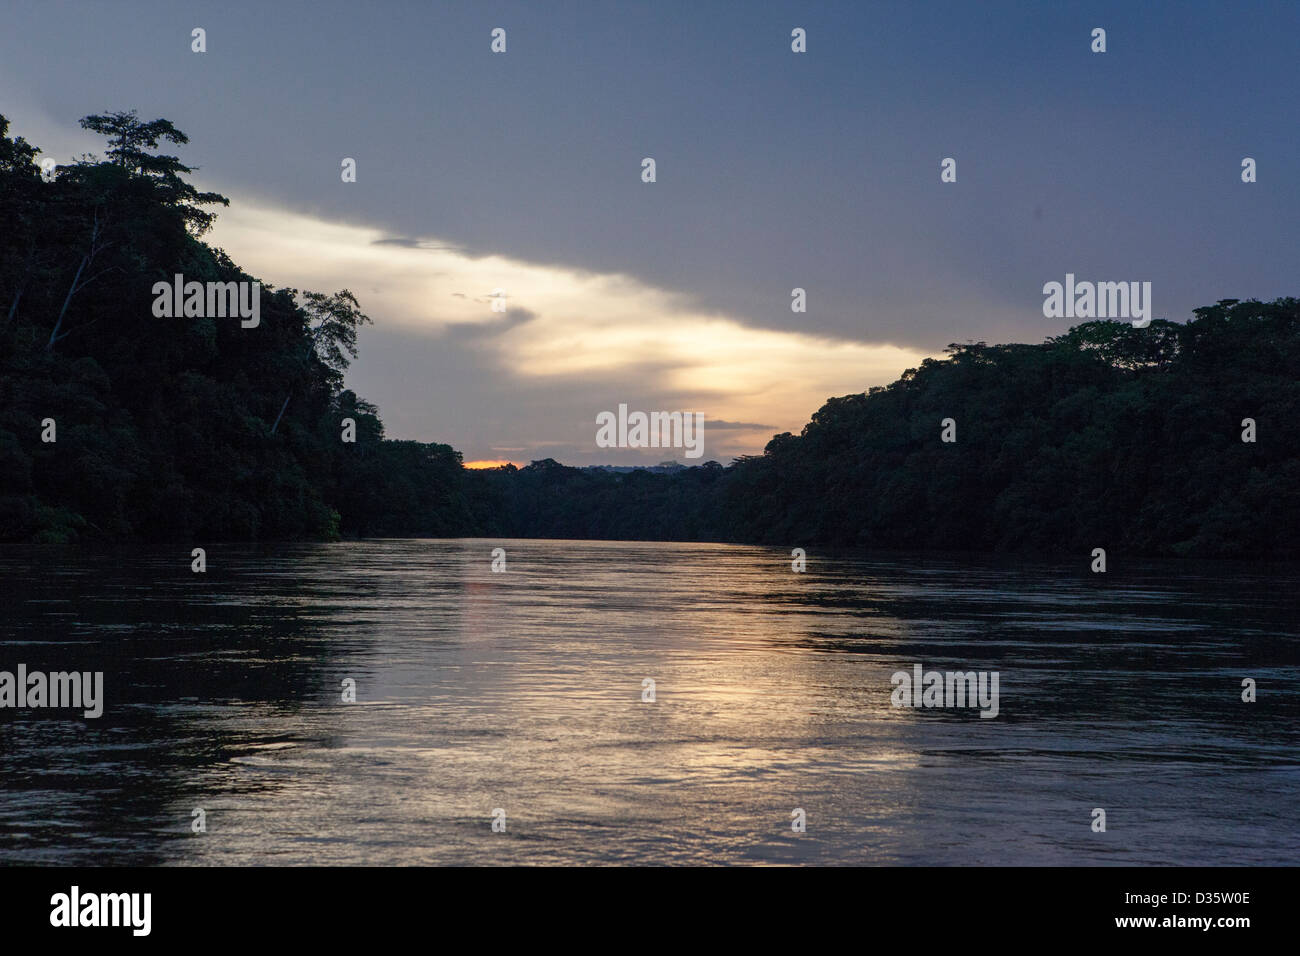 CONGO, le 29 septembre 2012 : La rivière Dja au crépuscule. Banque D'Images